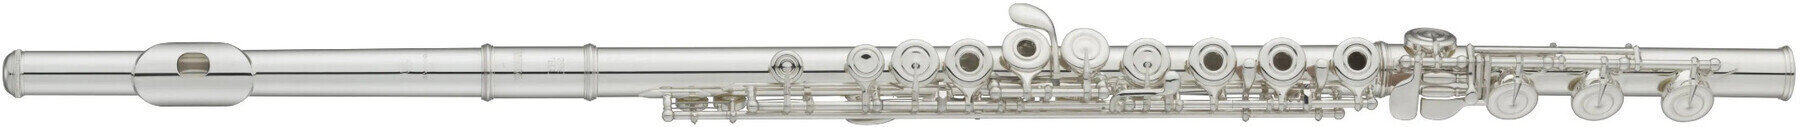 Concert flute Avanti 1000CIF Concert flute